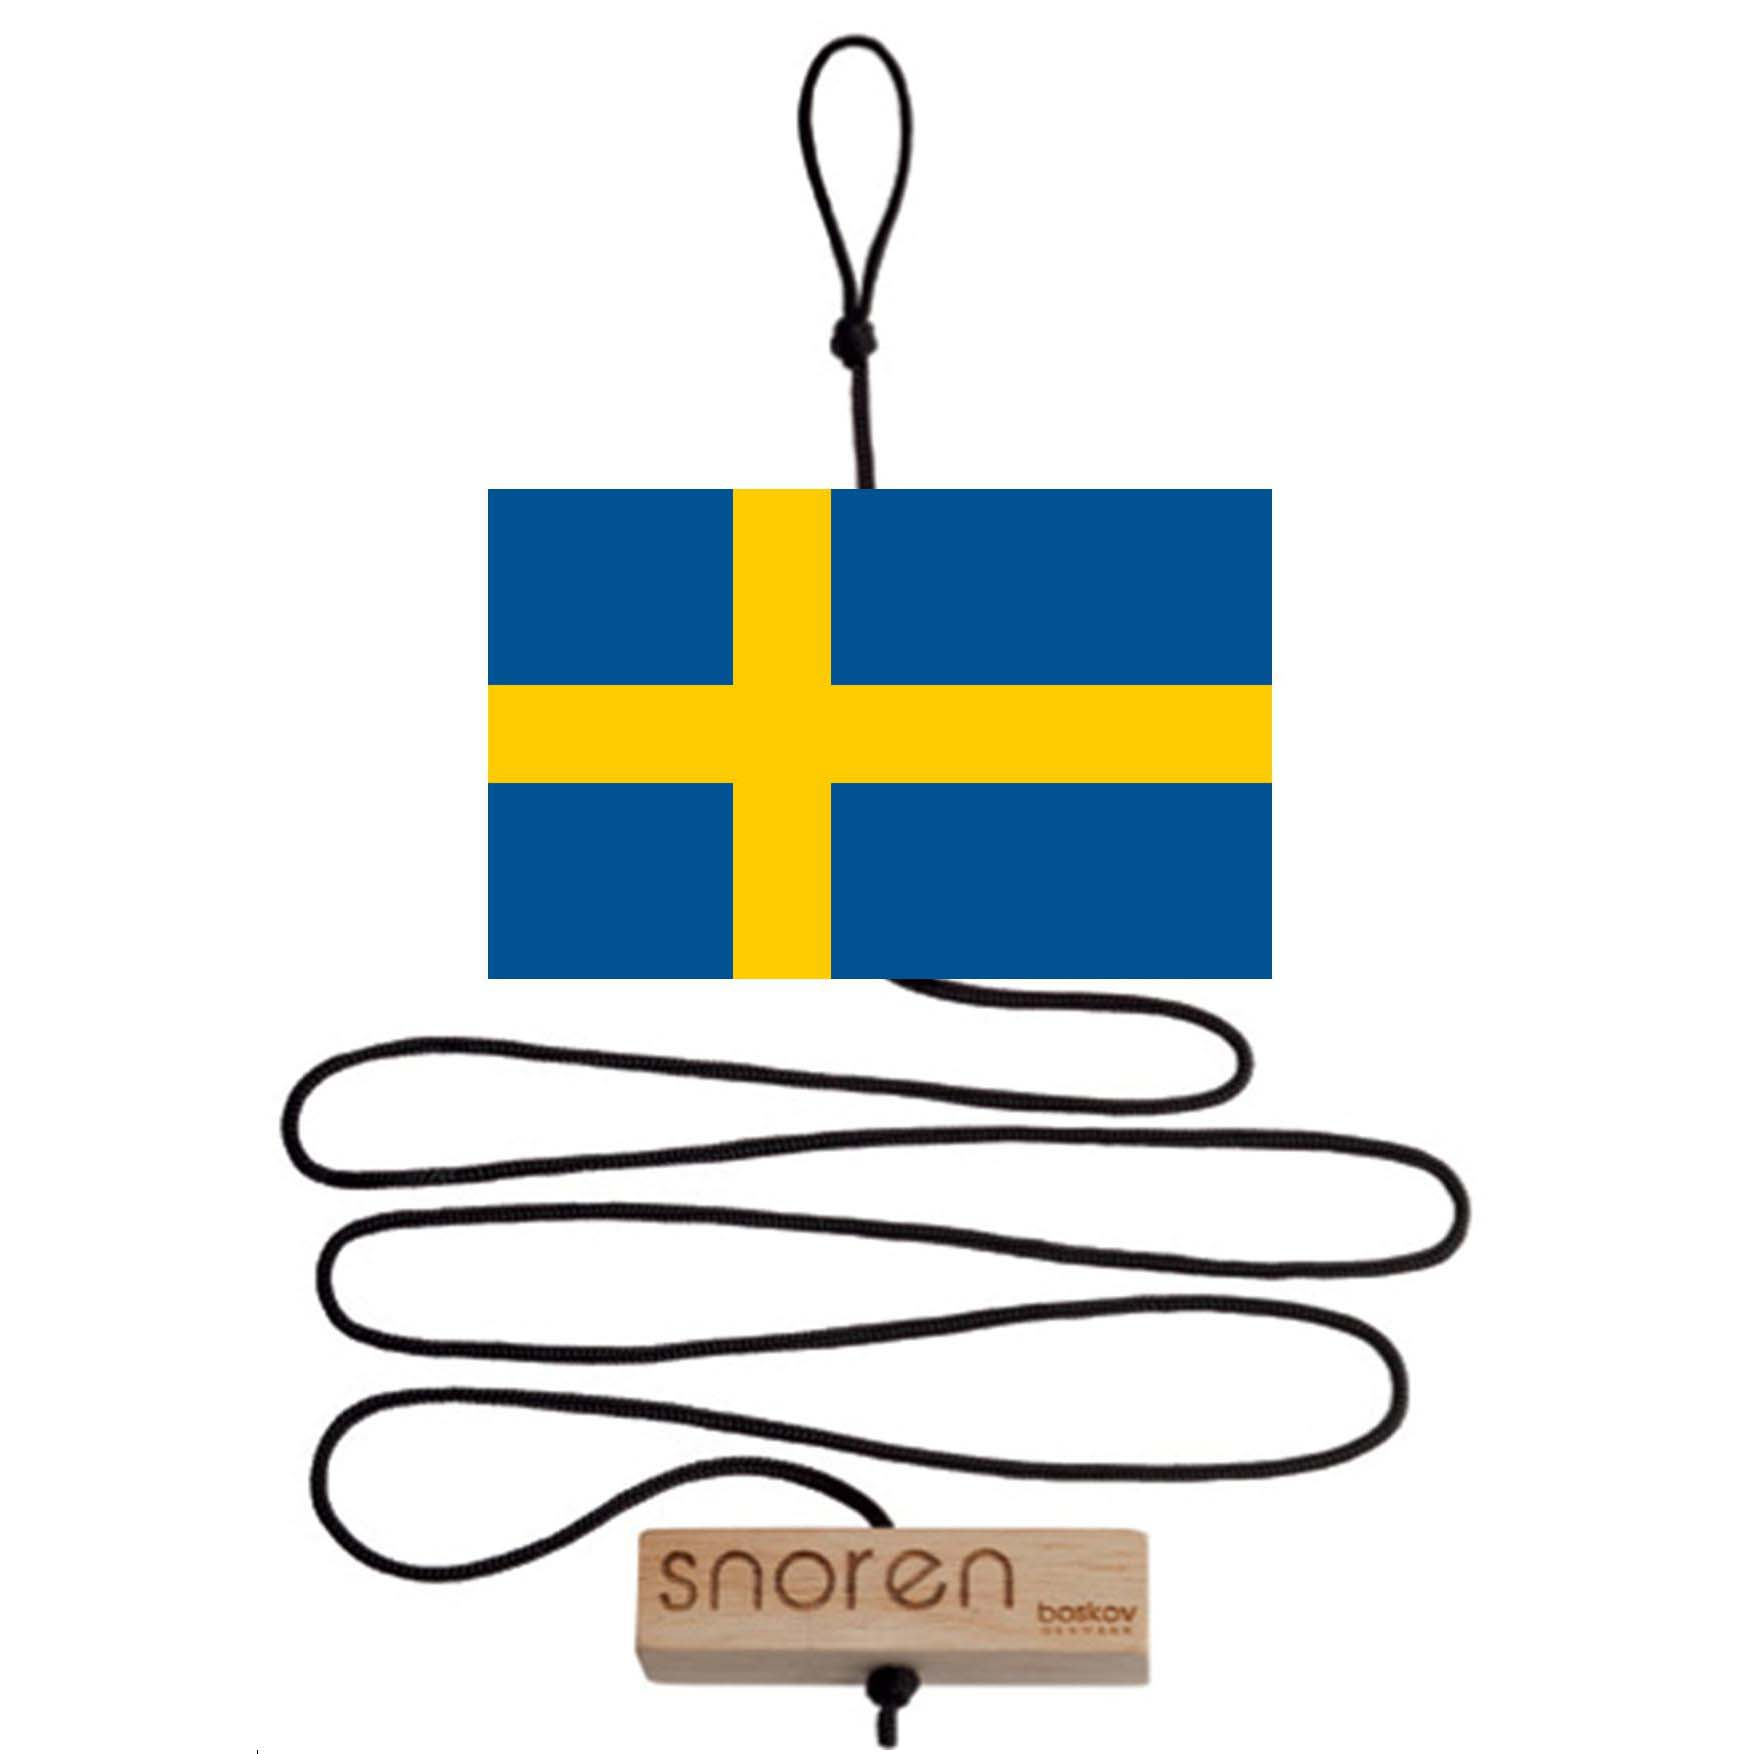 Snoren - Svensk træflag og velkommen klods/brick